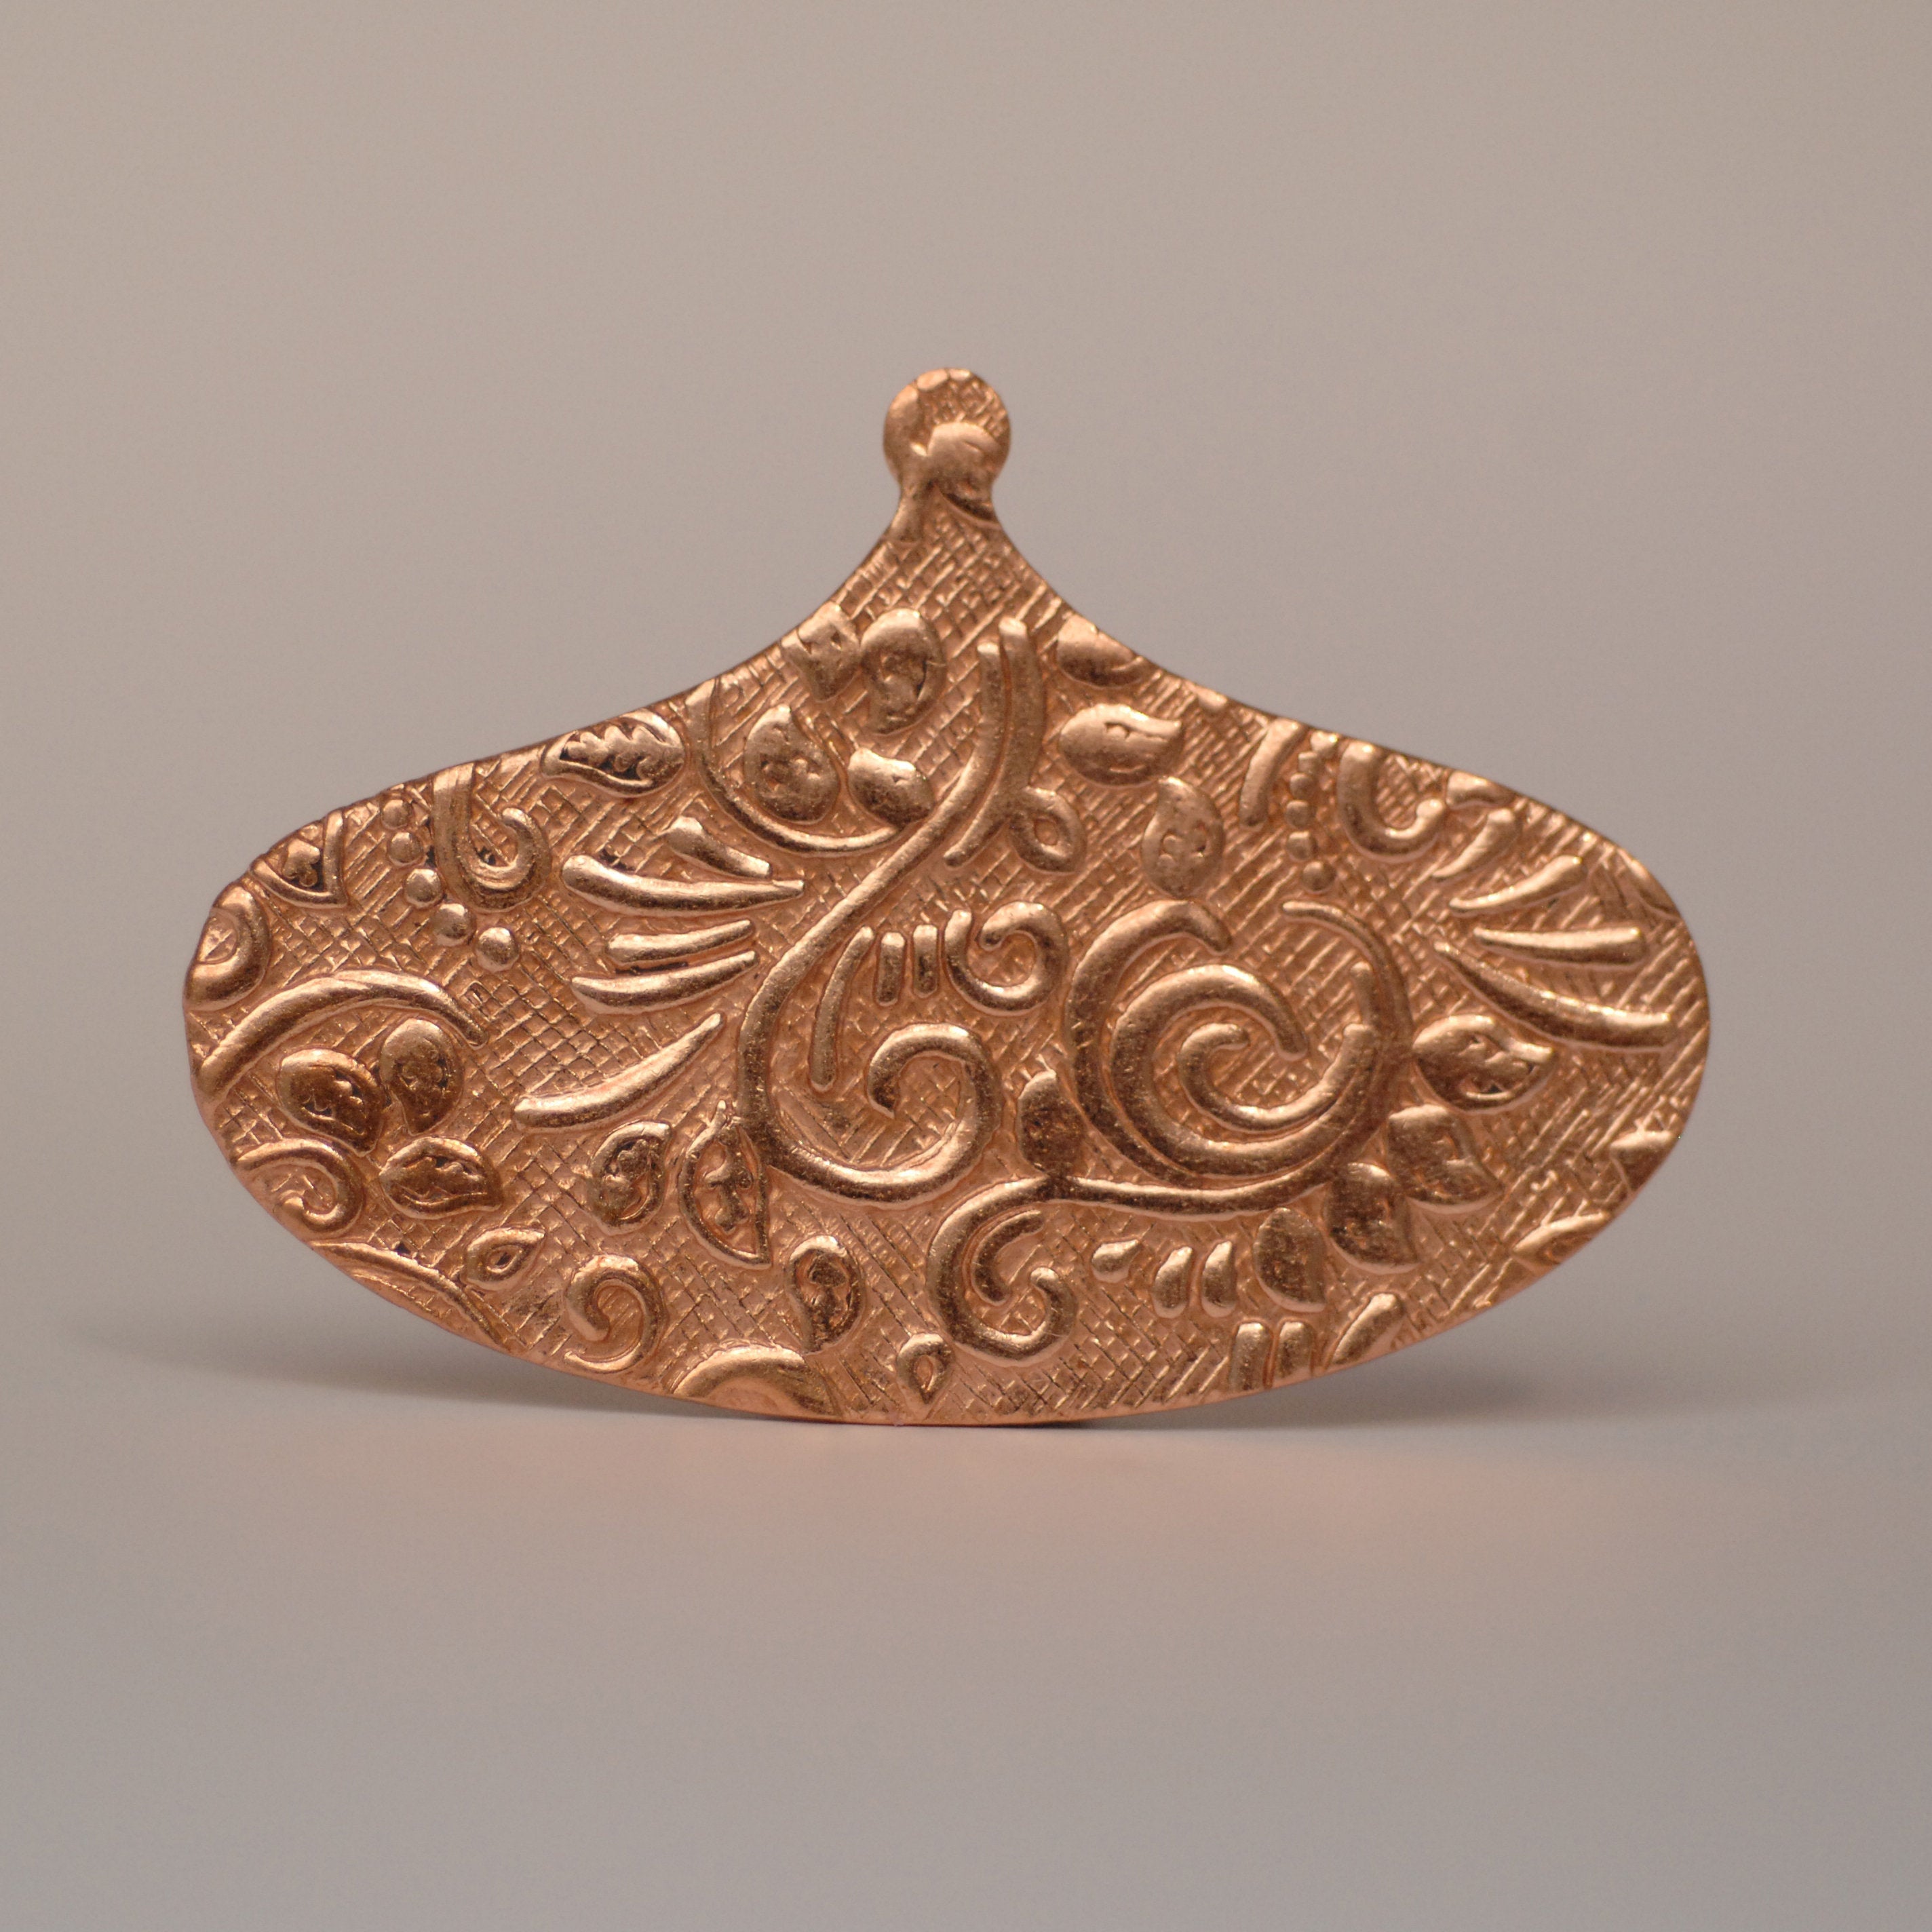 Arabic wide teardrop shape w/ batik vines texture metal blanks for earrings or for pendants